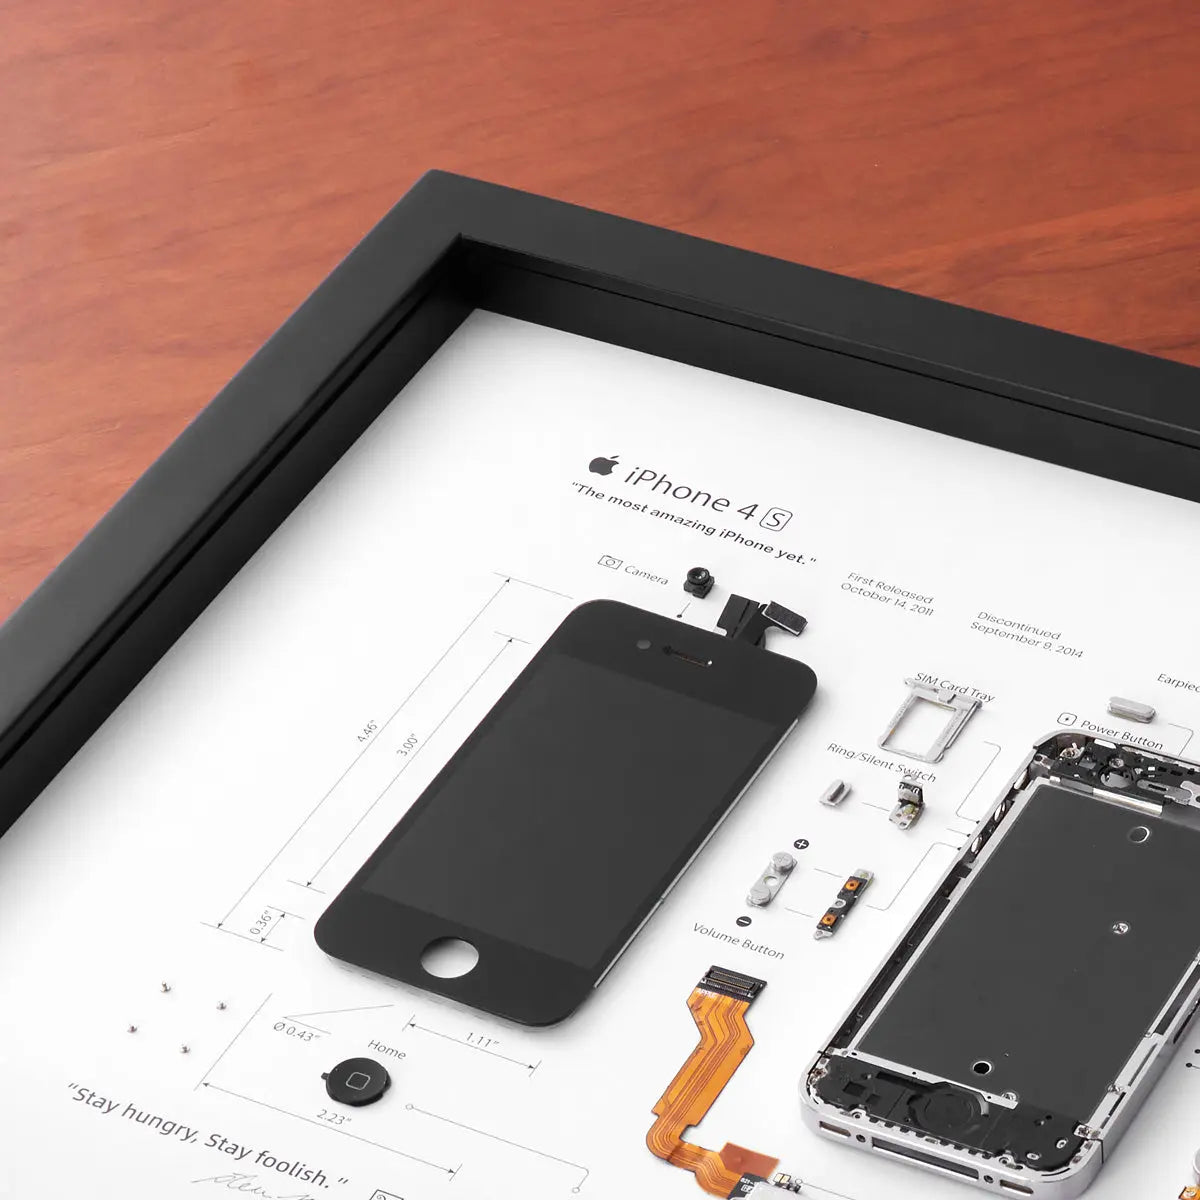 Xreart iPhone 4s Teardown Framed Artwork, Best Nostalgia Gift - Xreart